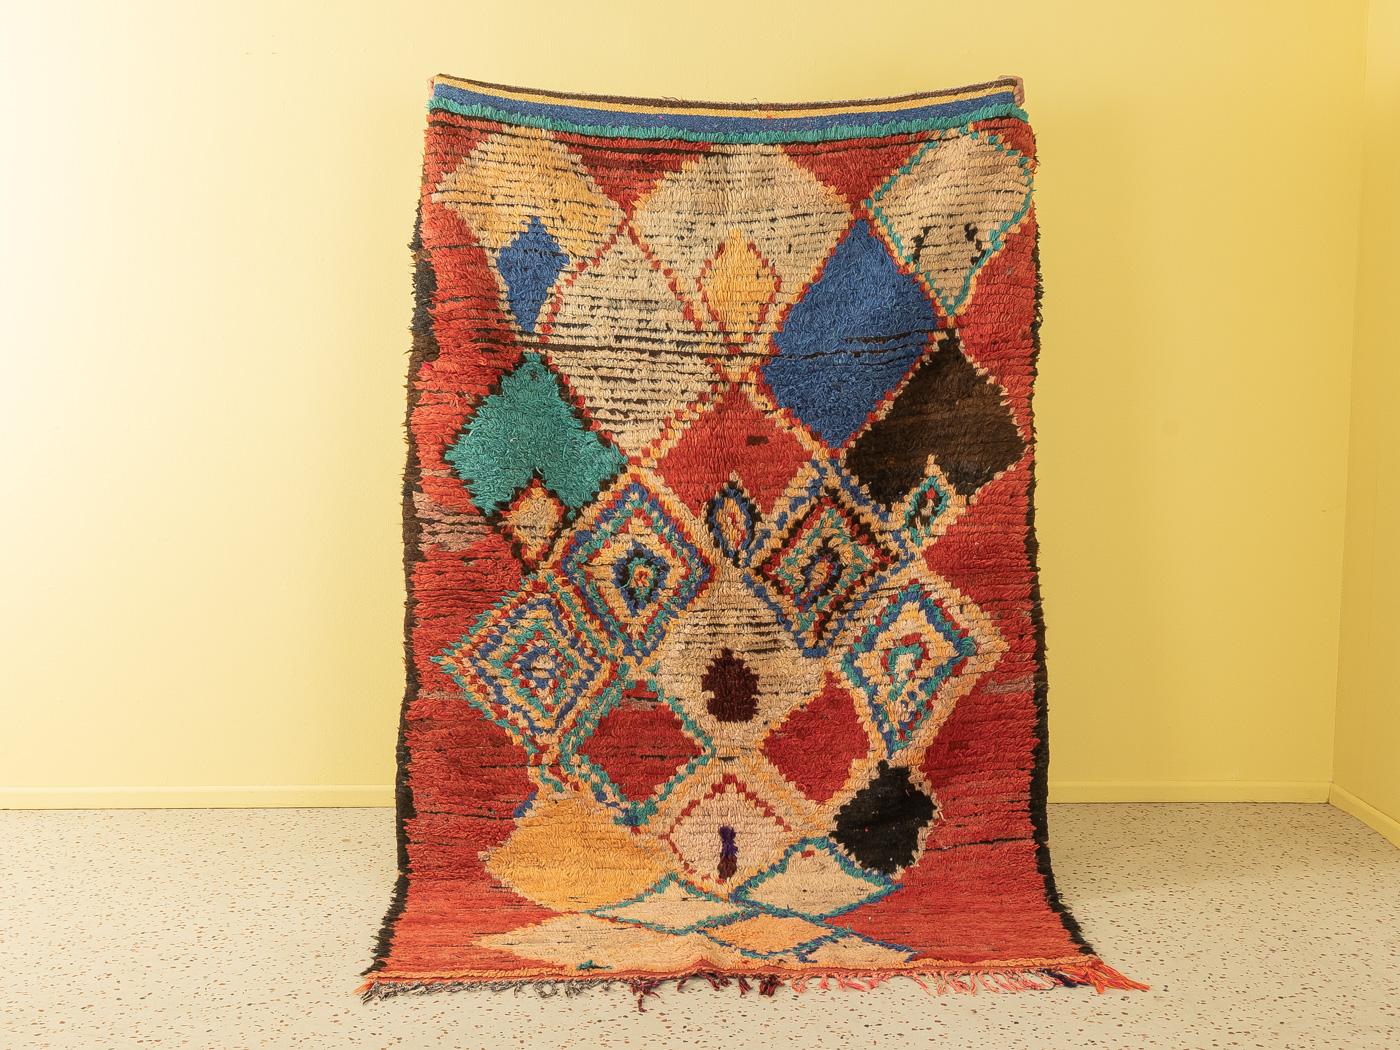 Ce tapis Vintage Azilal est un tapis 100 % laine - doux et confortable sous le pied. Nos tapis berbères sont fabriqués à la main, un nœud à la fois. Chacun de nos tapis berbères est une pièce unique et durable, créée de manière durable avec de la